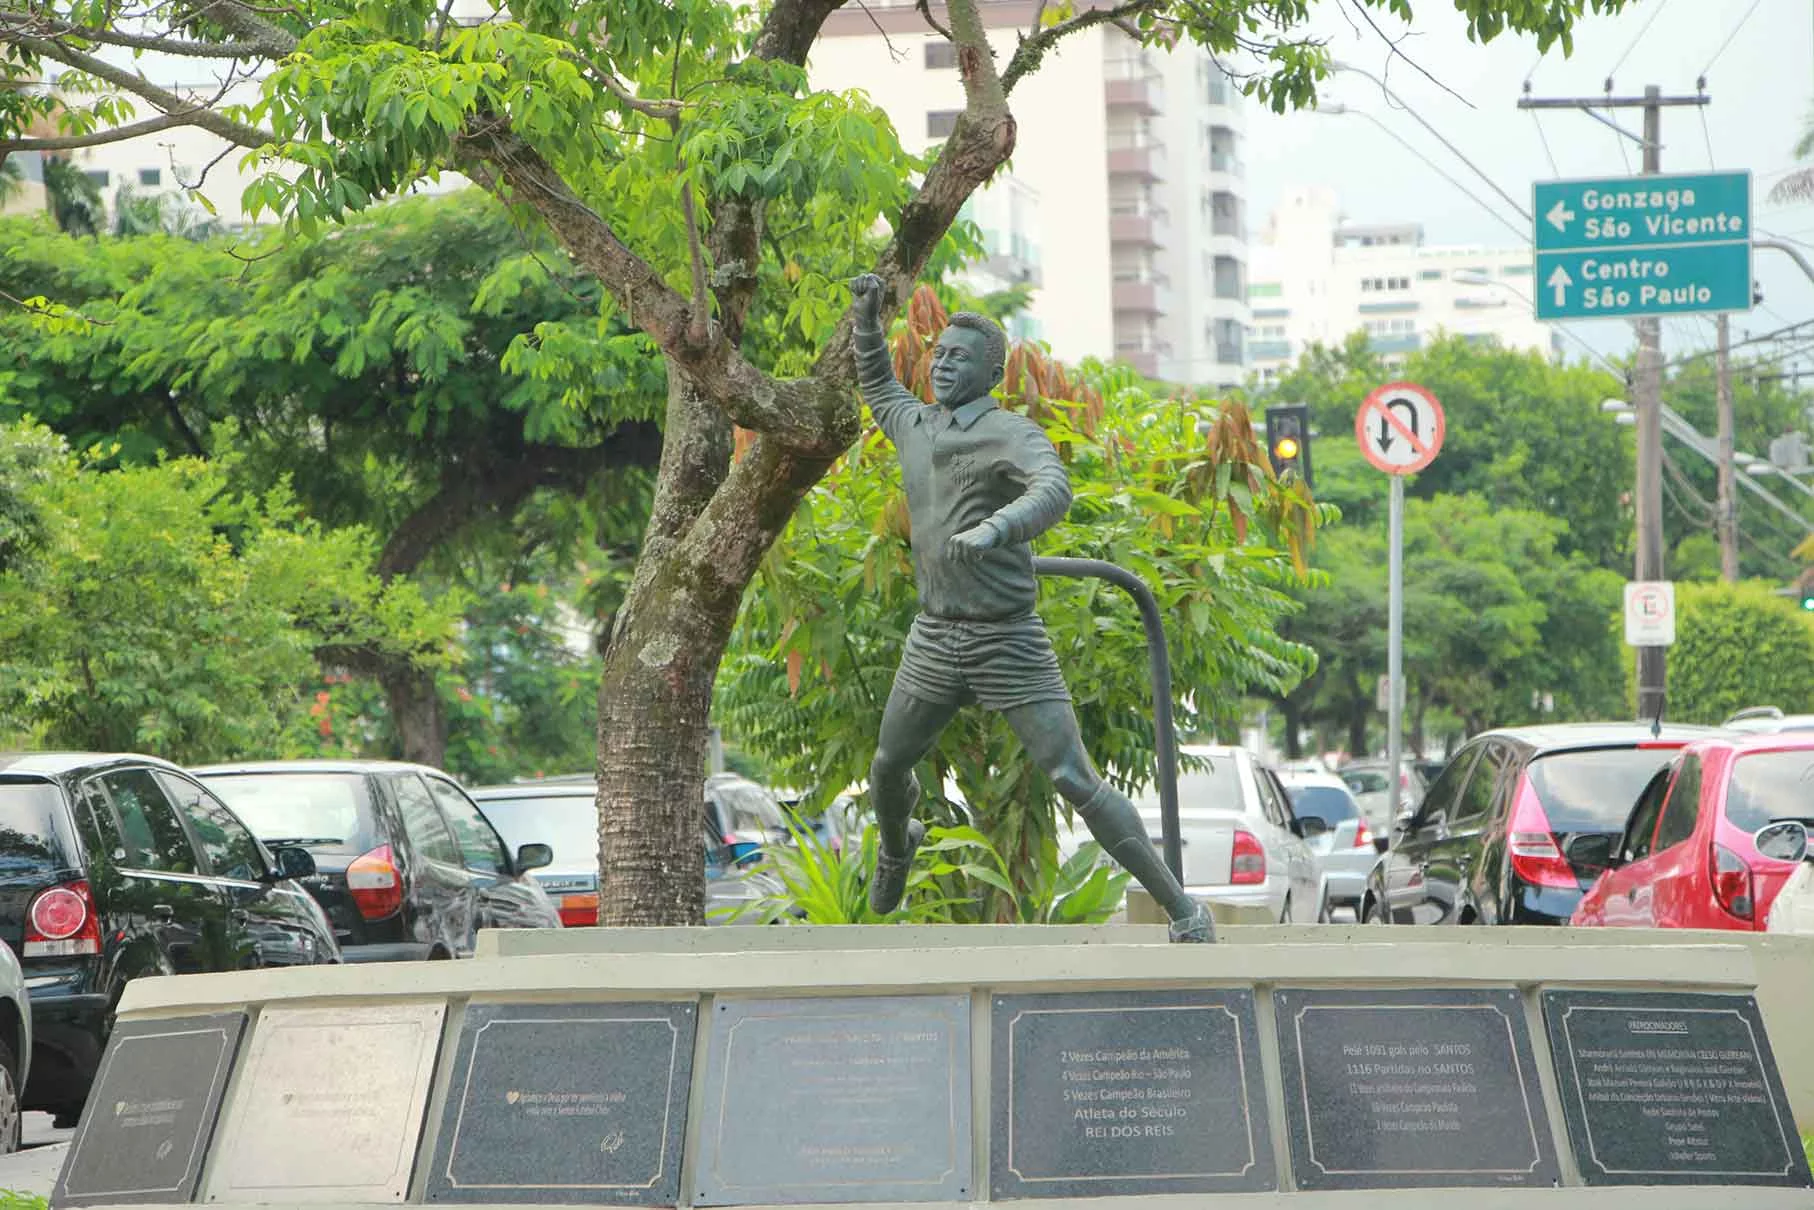 O soco no ar de Pelé, sua marca registrada de comemoração de gol. Esquina da Av. Epitácio Pessoa com a Av. Almirante Cóchrane